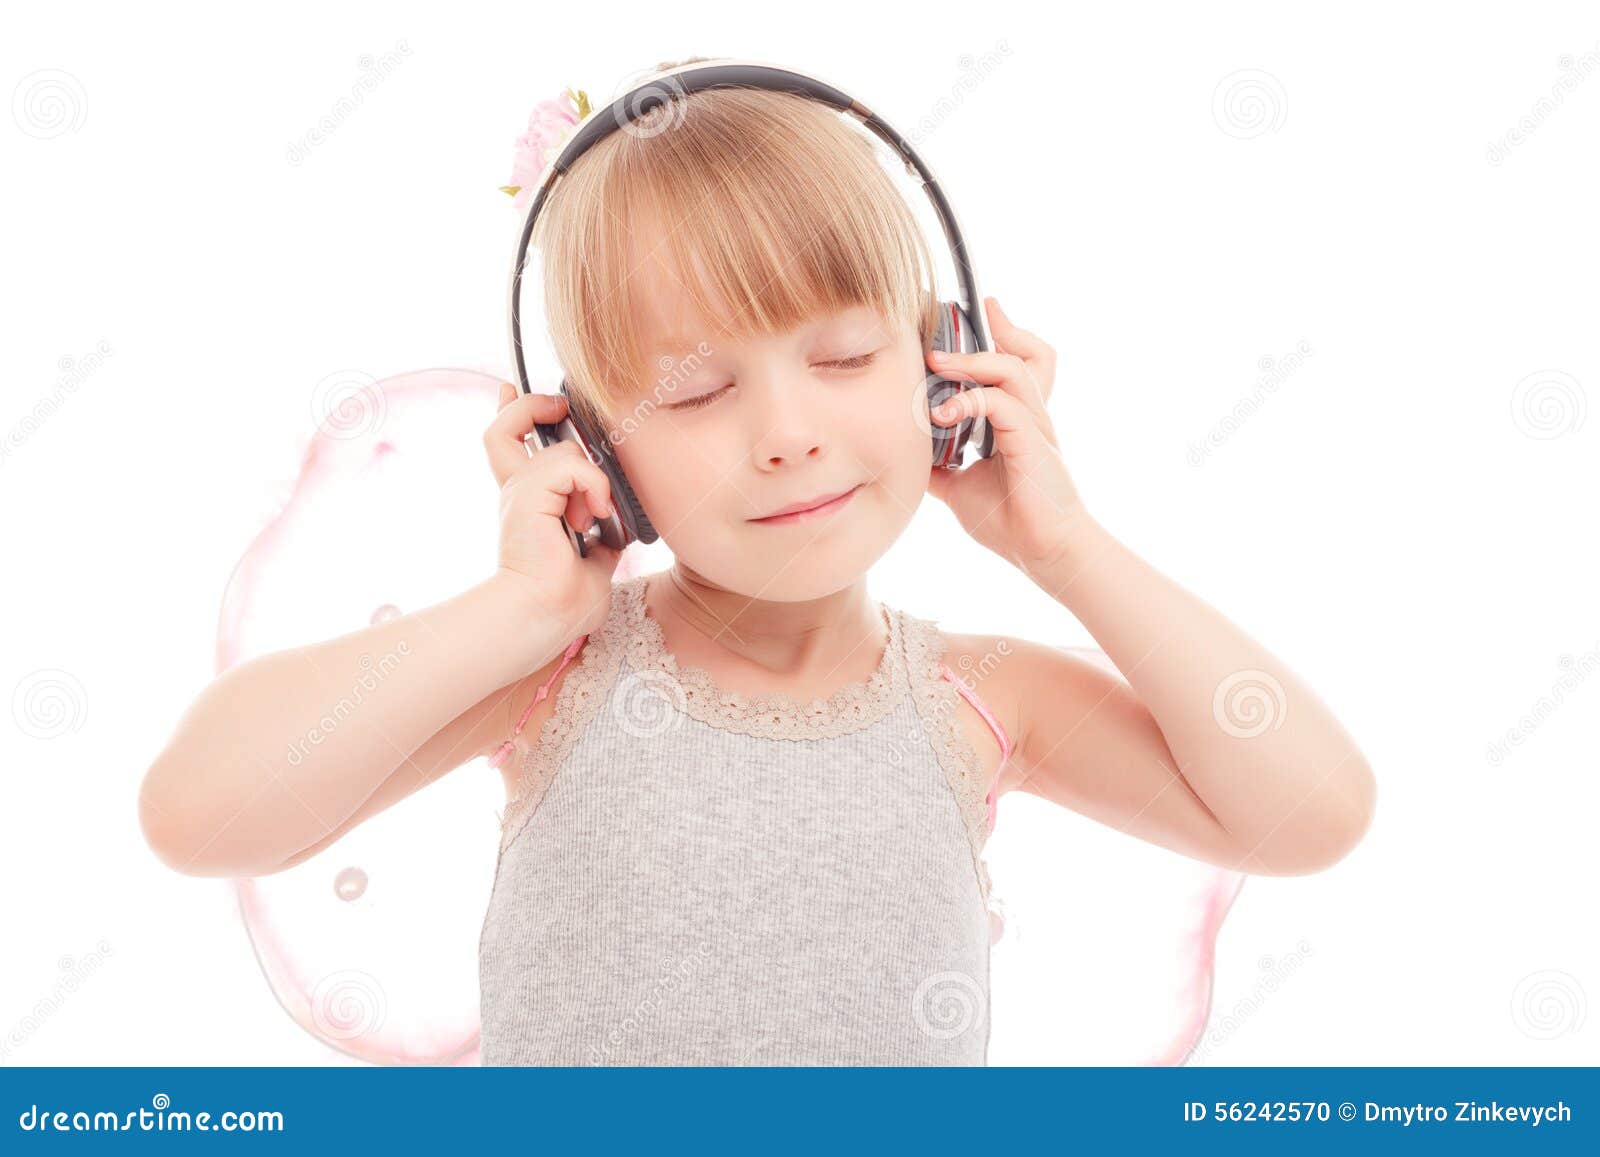 Слушать девочка милашка а в руках. Маленькая девочка слушает музыку. Картинка девочка слушает. Фотография пквица маленькая девочка слушает радио и поёт тни фото.